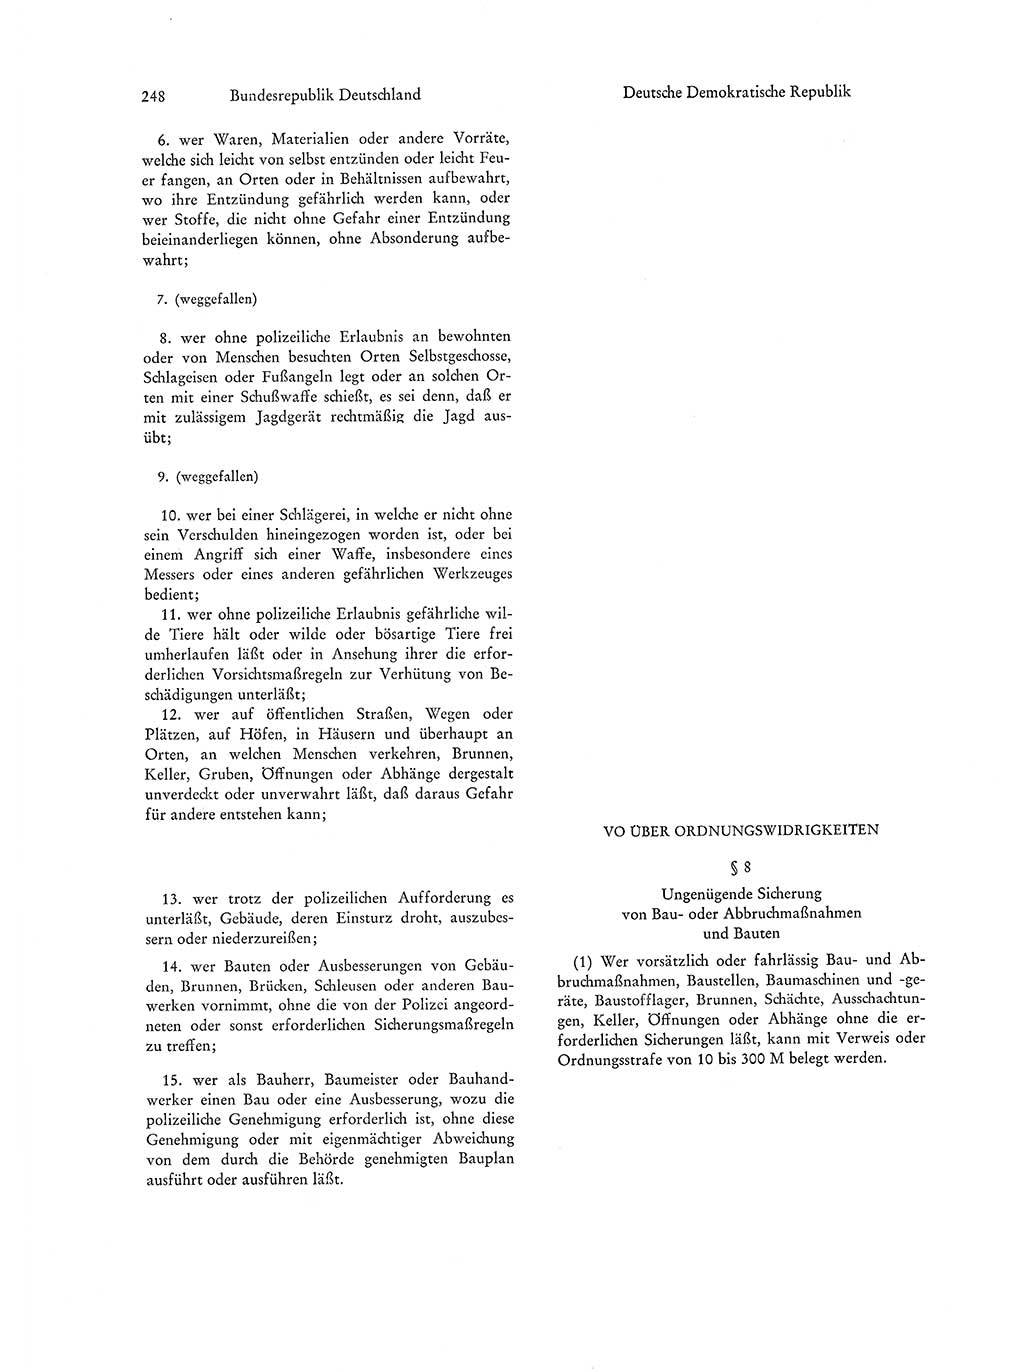 Strafgesetzgebung in Deutschland [Bundesrepublik Deutschland (BRD) und Deutsche Demokratische Republik (DDR)] 1972, Seite 248 (Str.-Ges. Dtl. StGB BRD DDR 1972, S. 248)